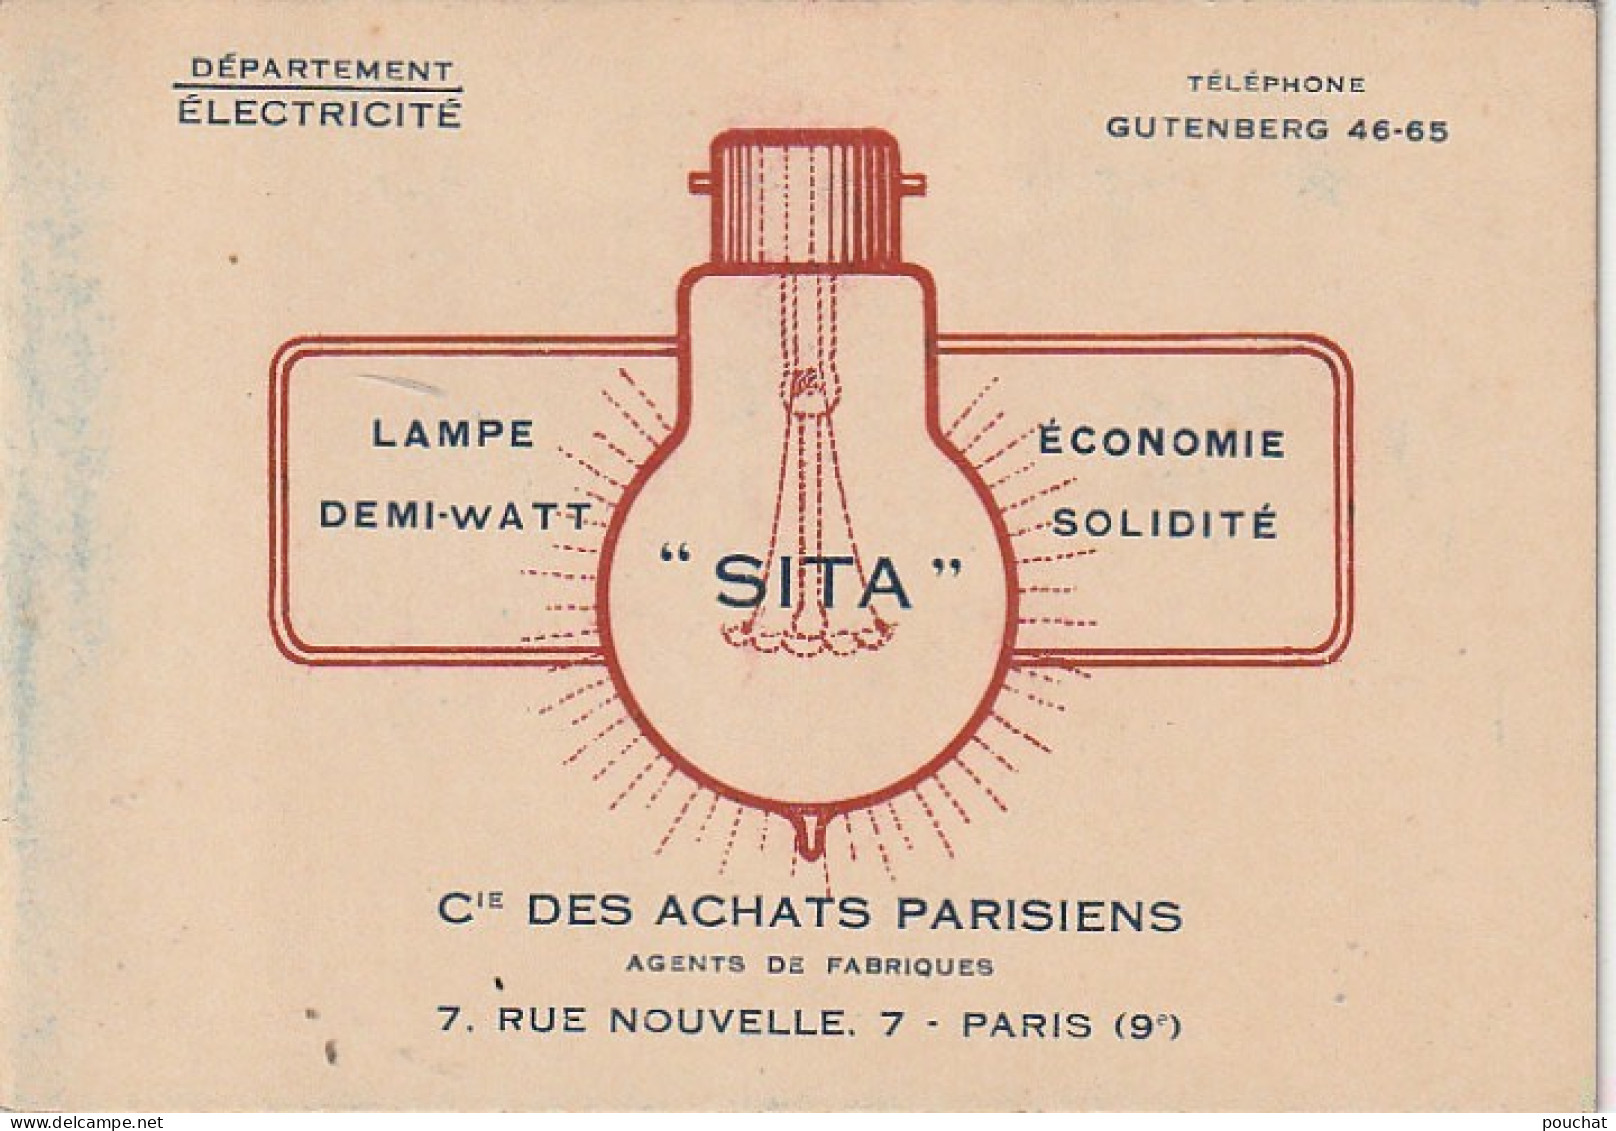 Z+ 25- (75) Cie DES ACHATS PARISIENS , DEPT ELECTRICITE , PARIS 9e - LAMPES FILAMENTS METALLIQUES - TARIFS - Electricity & Gas